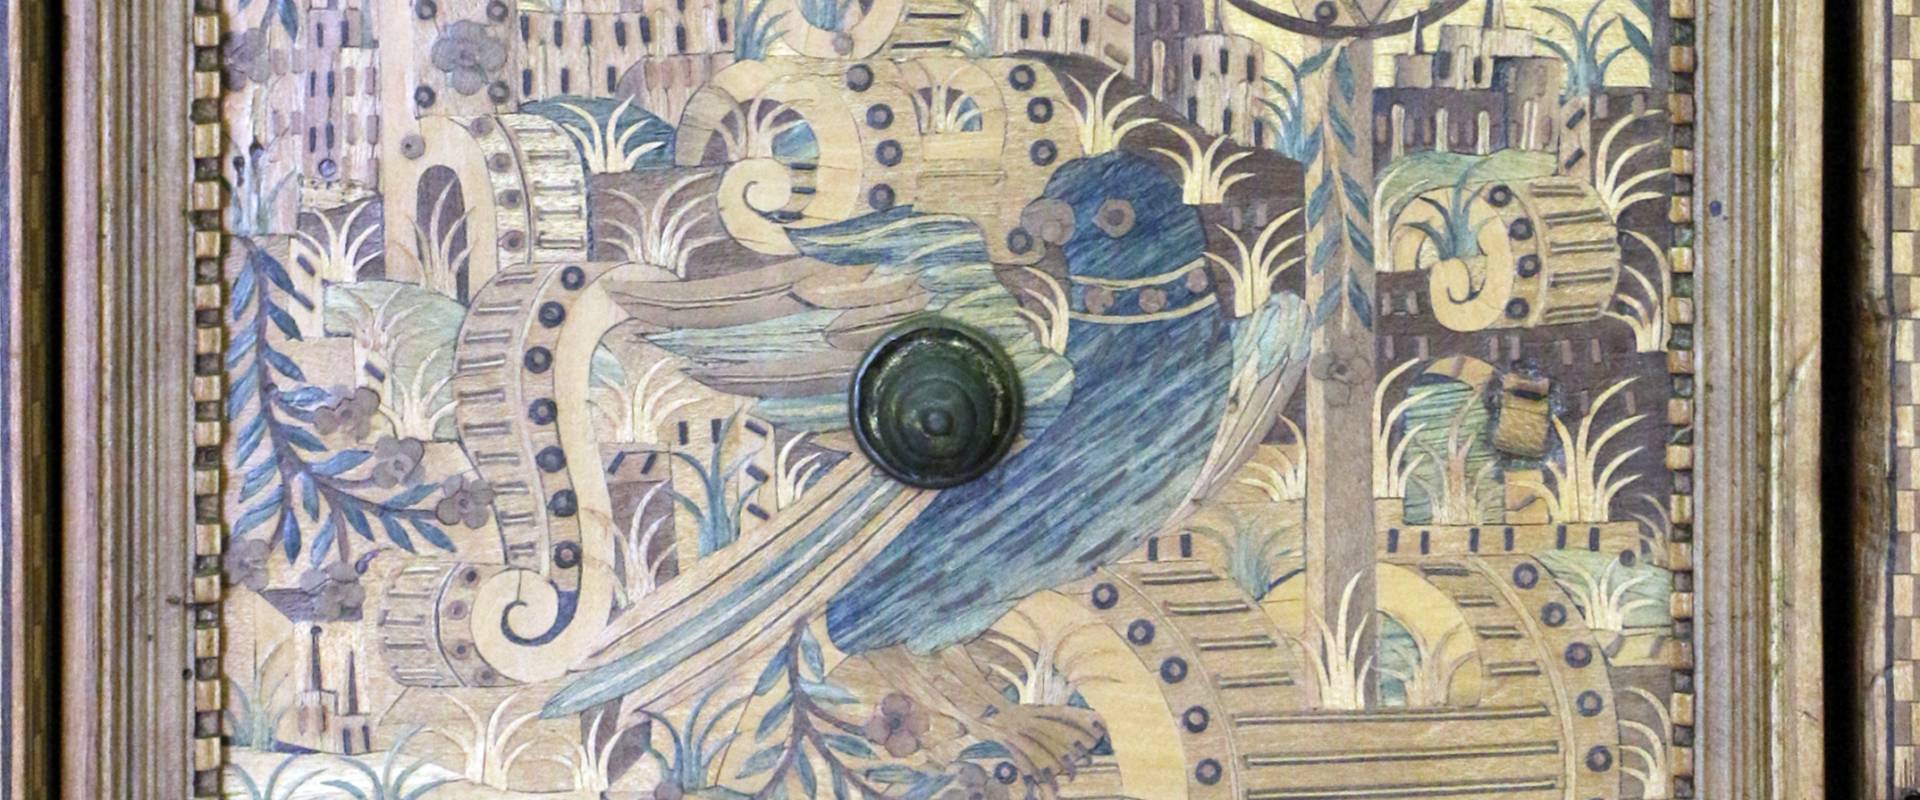 Augusta o tirolo, stipo da lavoro in legno di ciliegio con intarsi, 1550-1600 ca. 03 pappagallo photo by Sailko